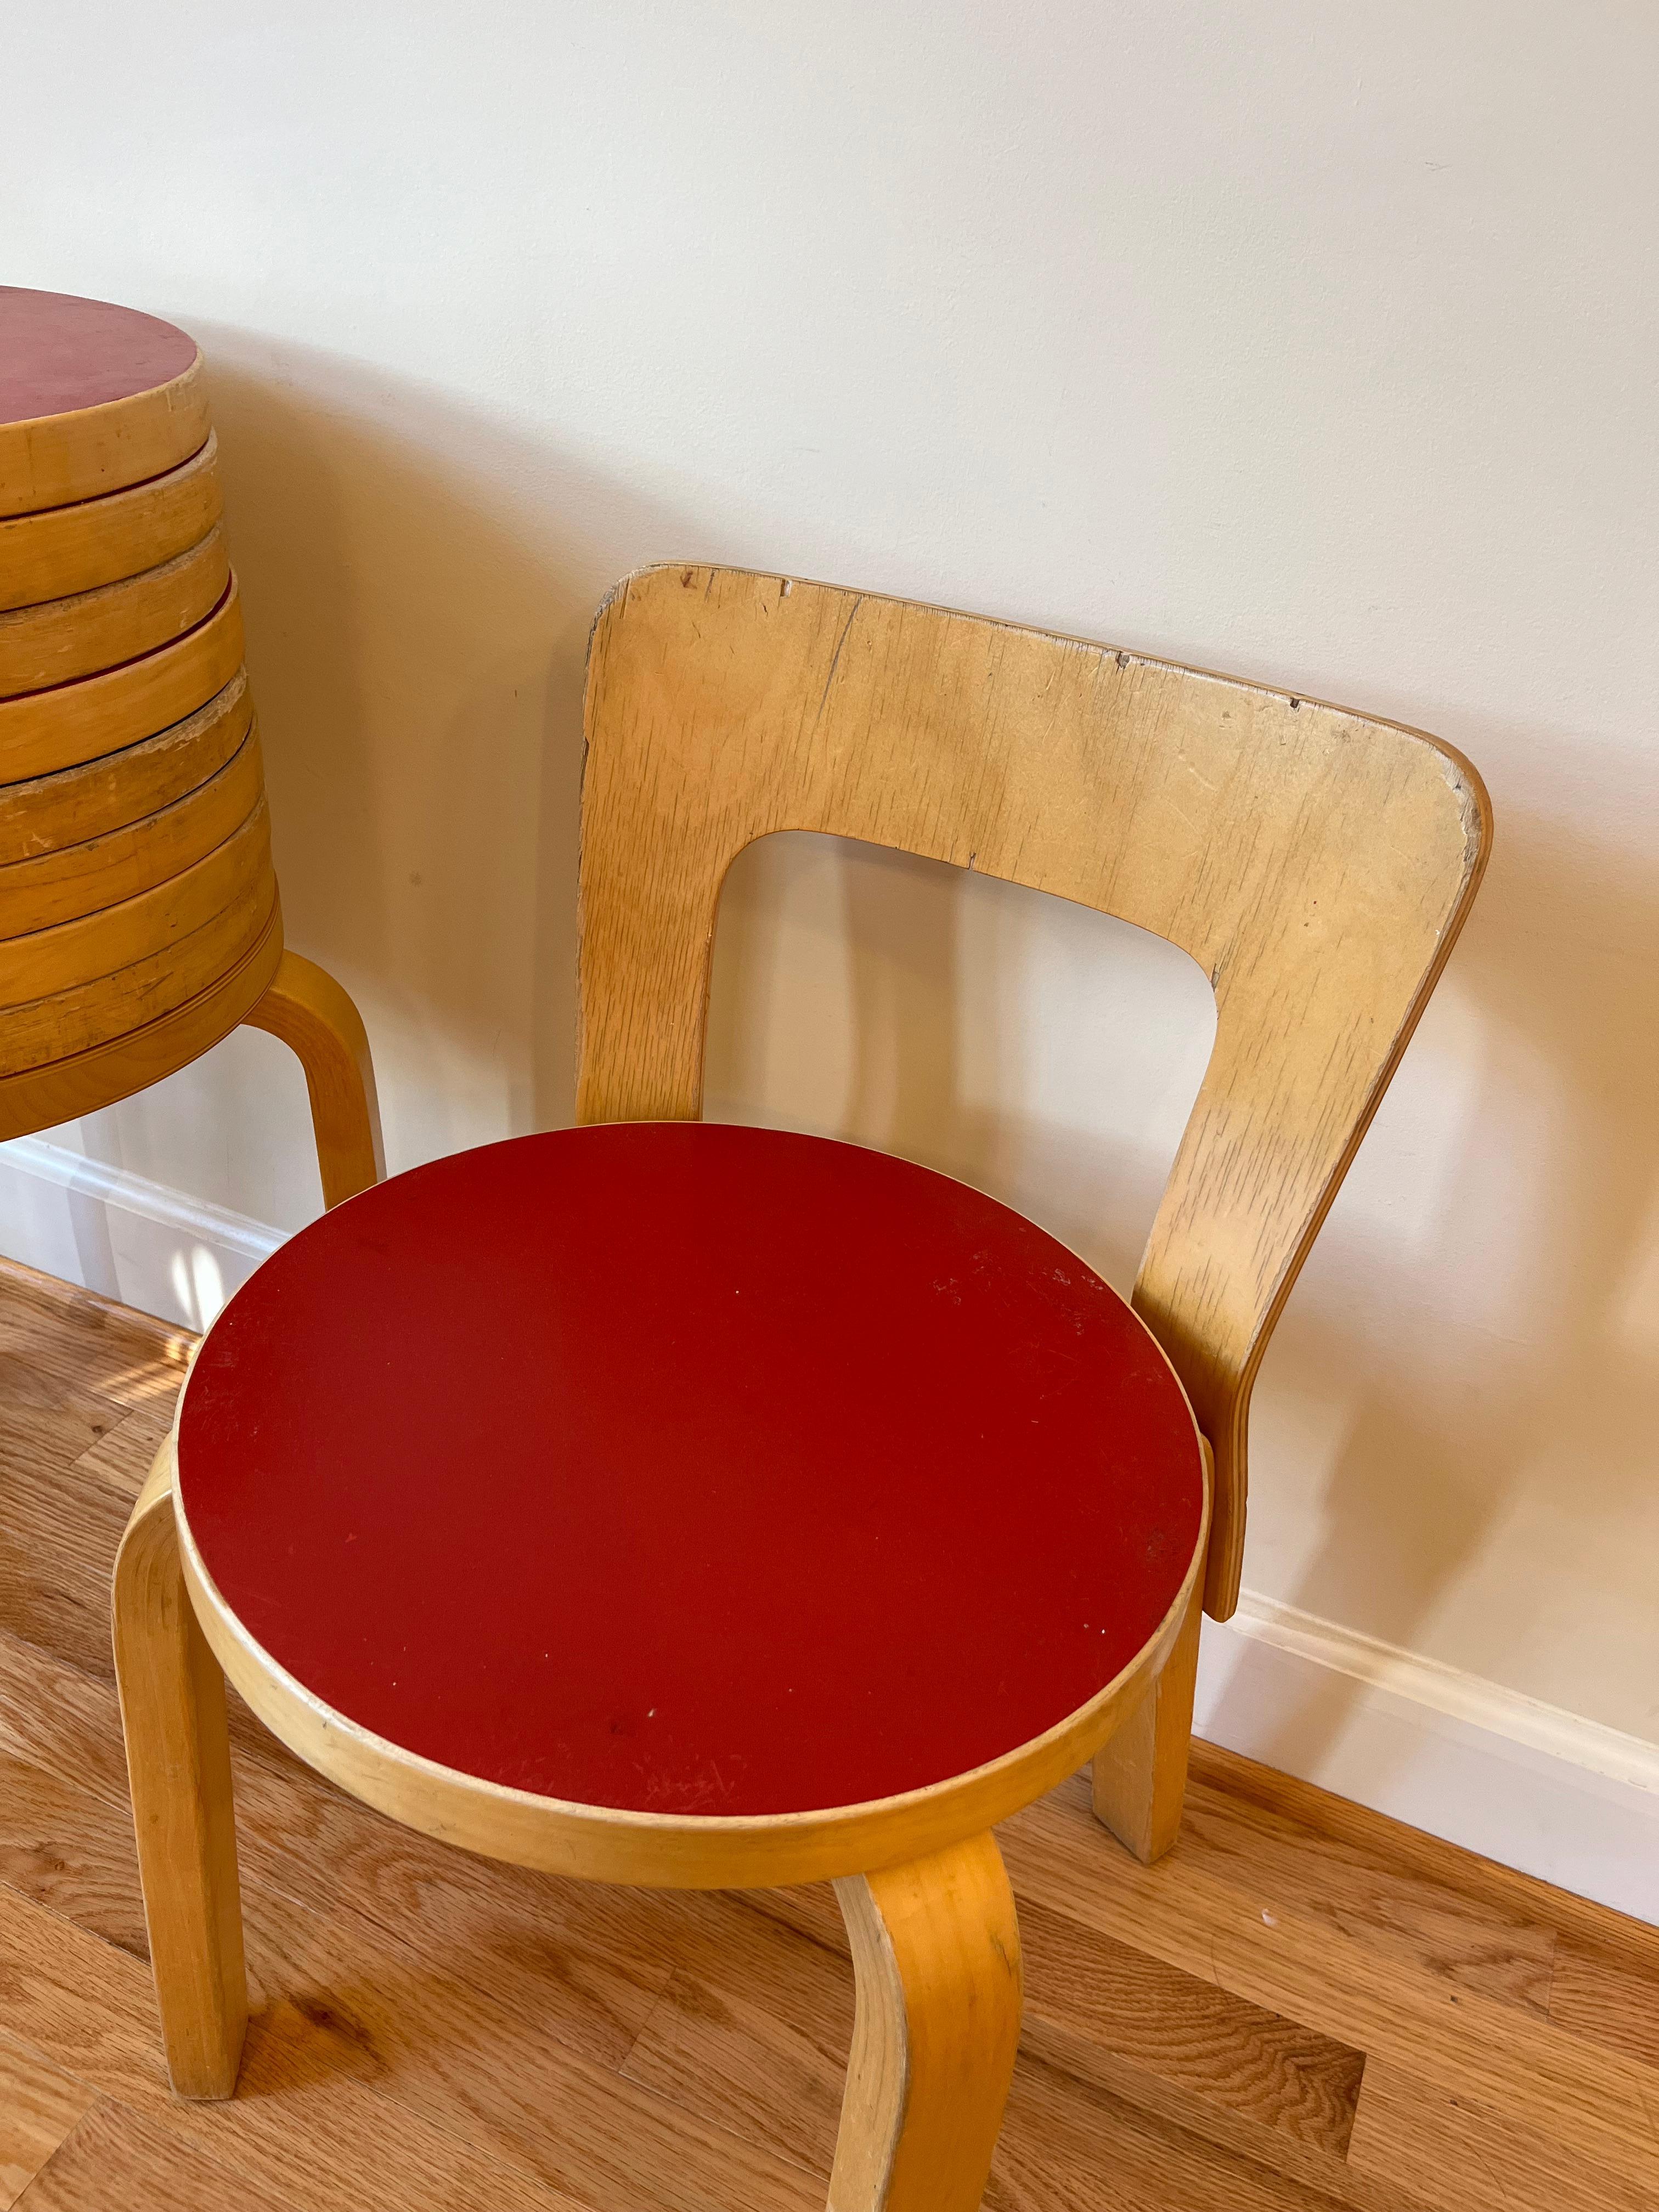 Bentwood Chair 65 by Alvar Aalto for Artek (Red Linoleum)